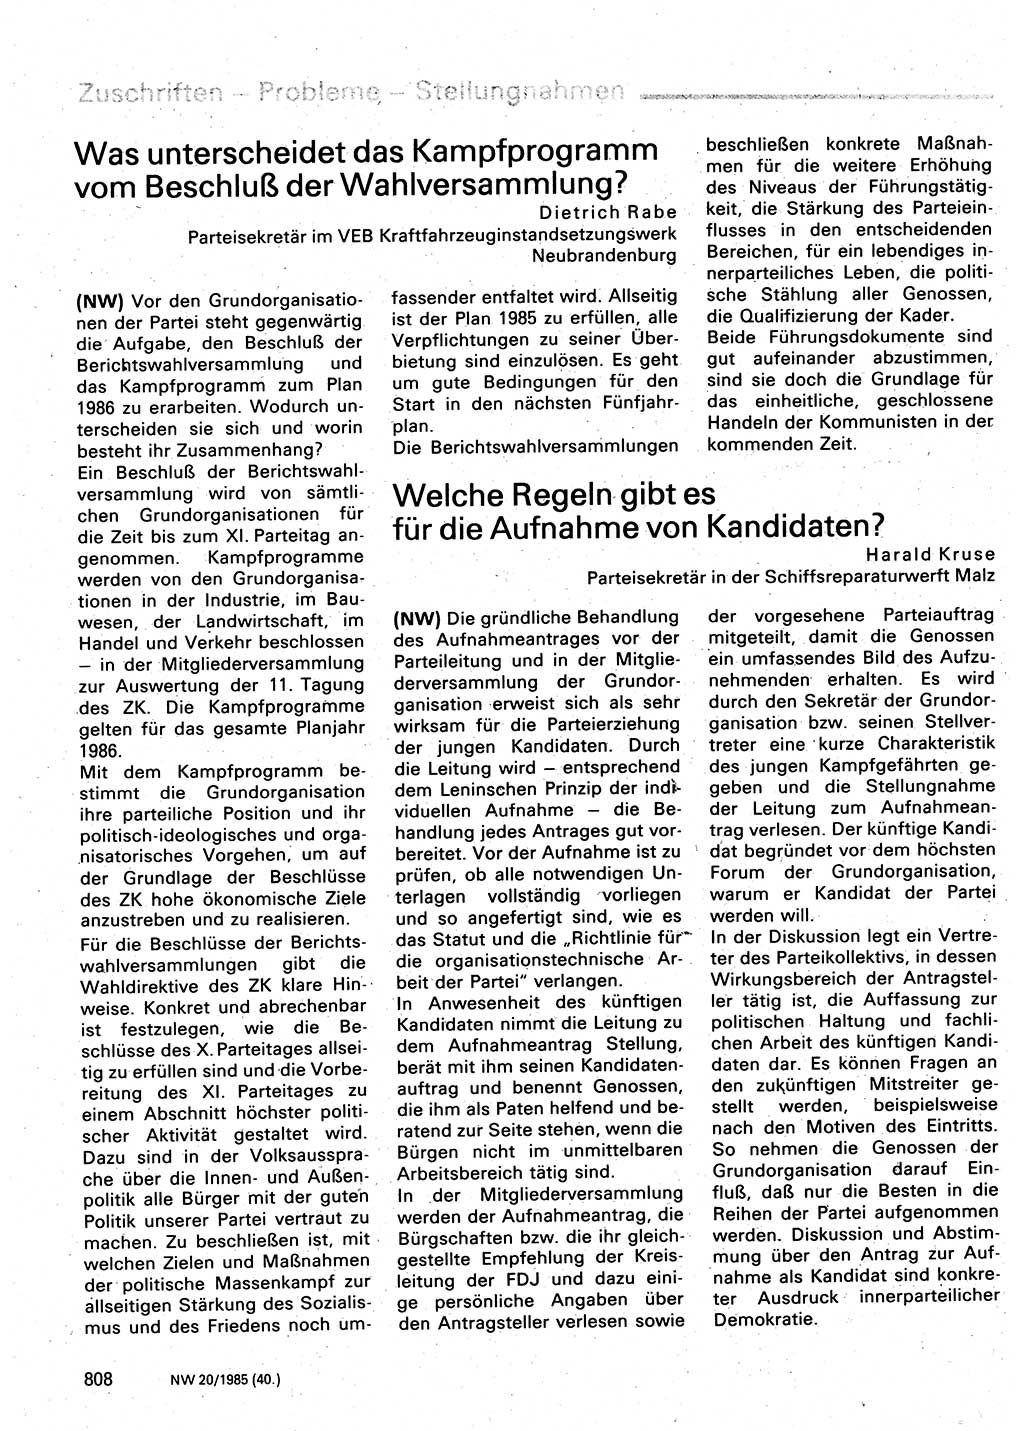 Neuer Weg (NW), Organ des Zentralkomitees (ZK) der SED (Sozialistische Einheitspartei Deutschlands) für Fragen des Parteilebens, 40. Jahrgang [Deutsche Demokratische Republik (DDR)] 1985, Seite 808 (NW ZK SED DDR 1985, S. 808)